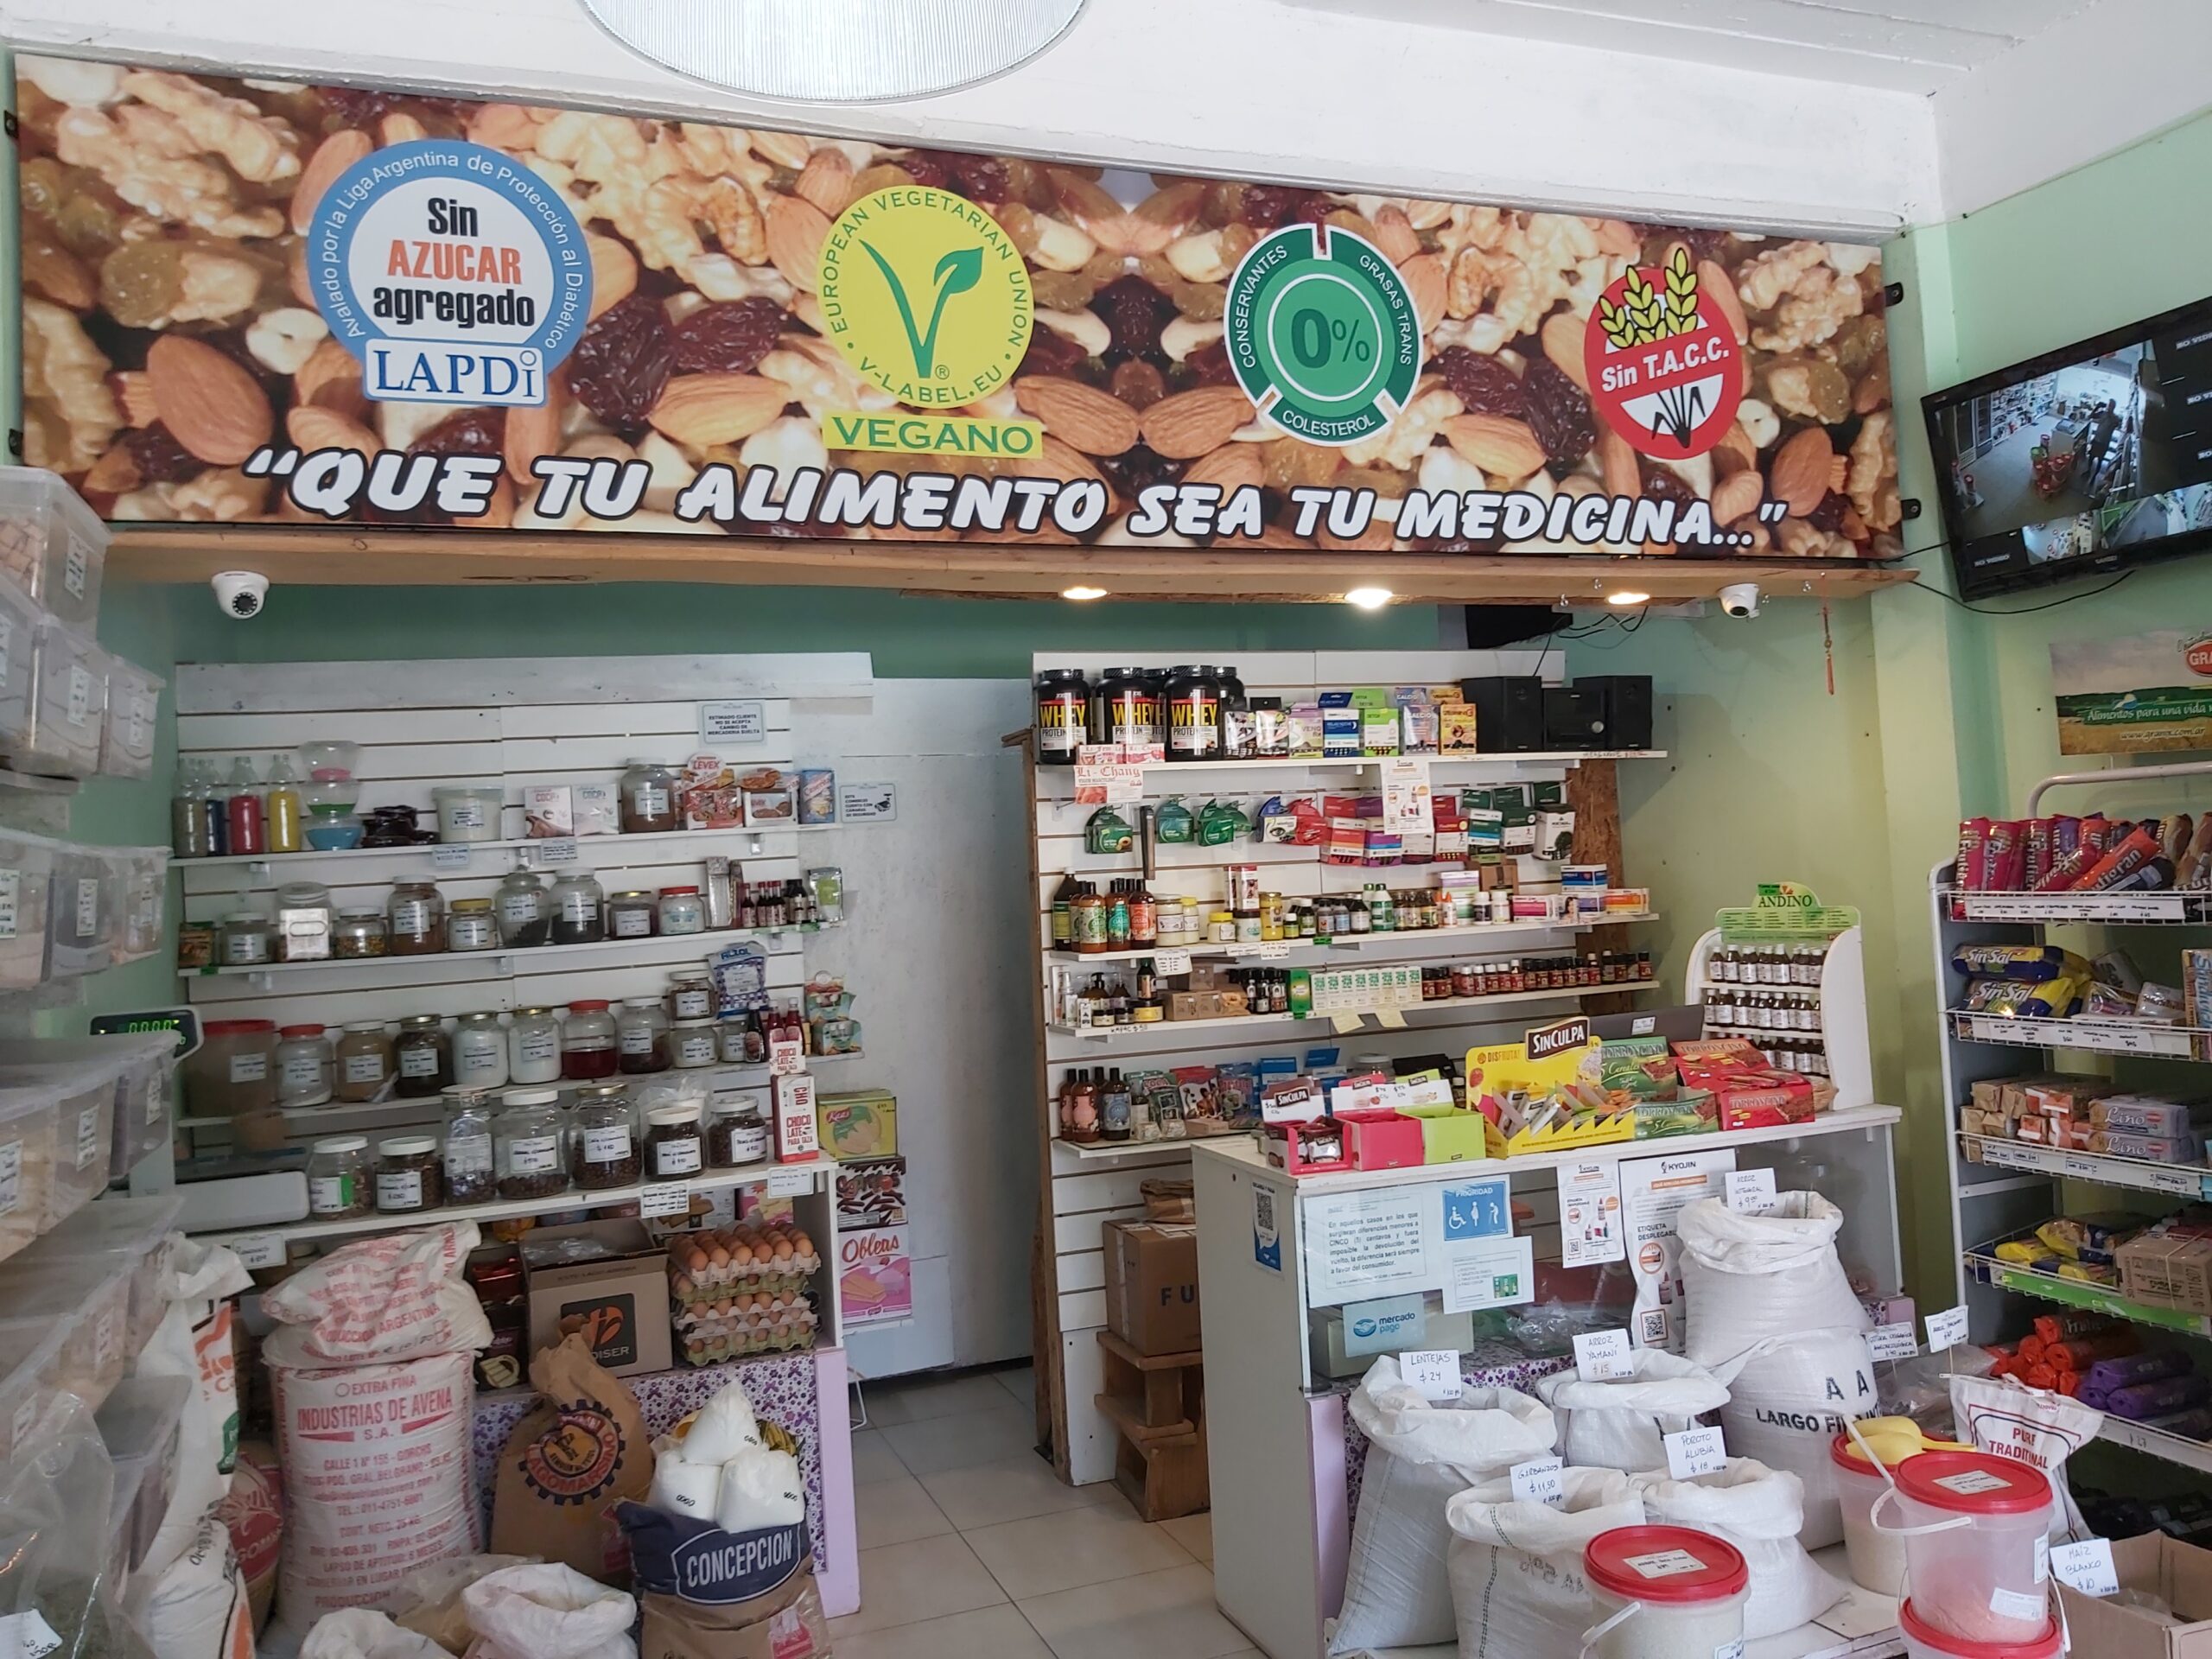 Dietetica Delicias Naturales